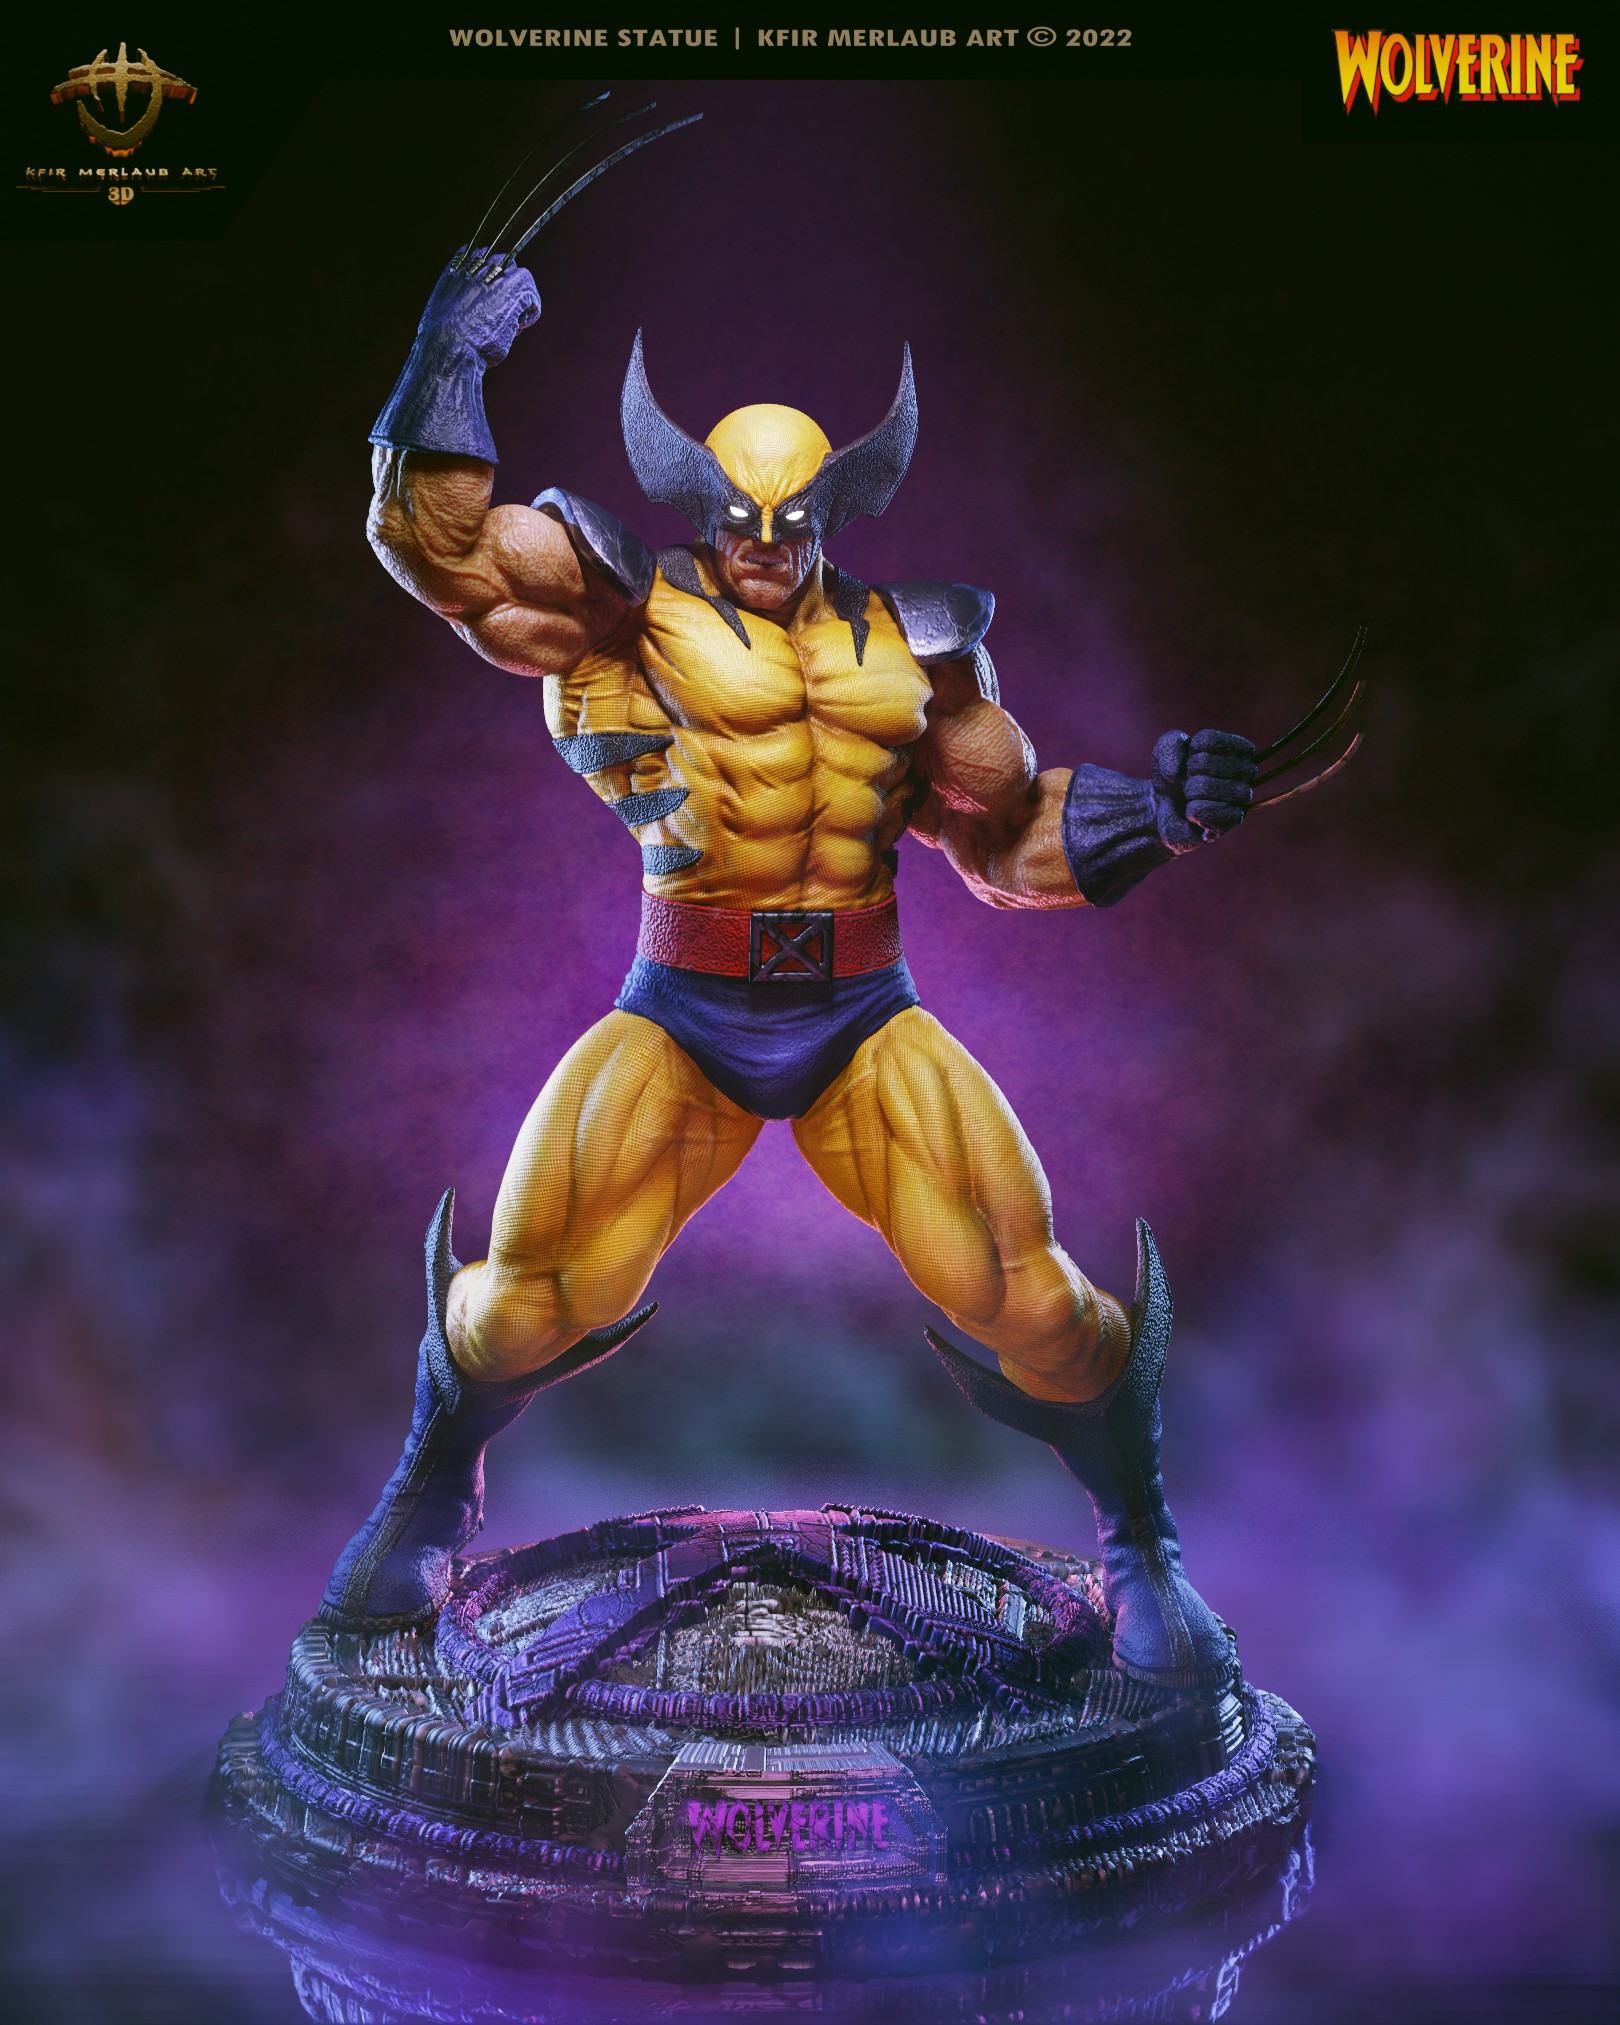 Wolverine Statue | Kfir Merlaub Art - ZBrushCentral